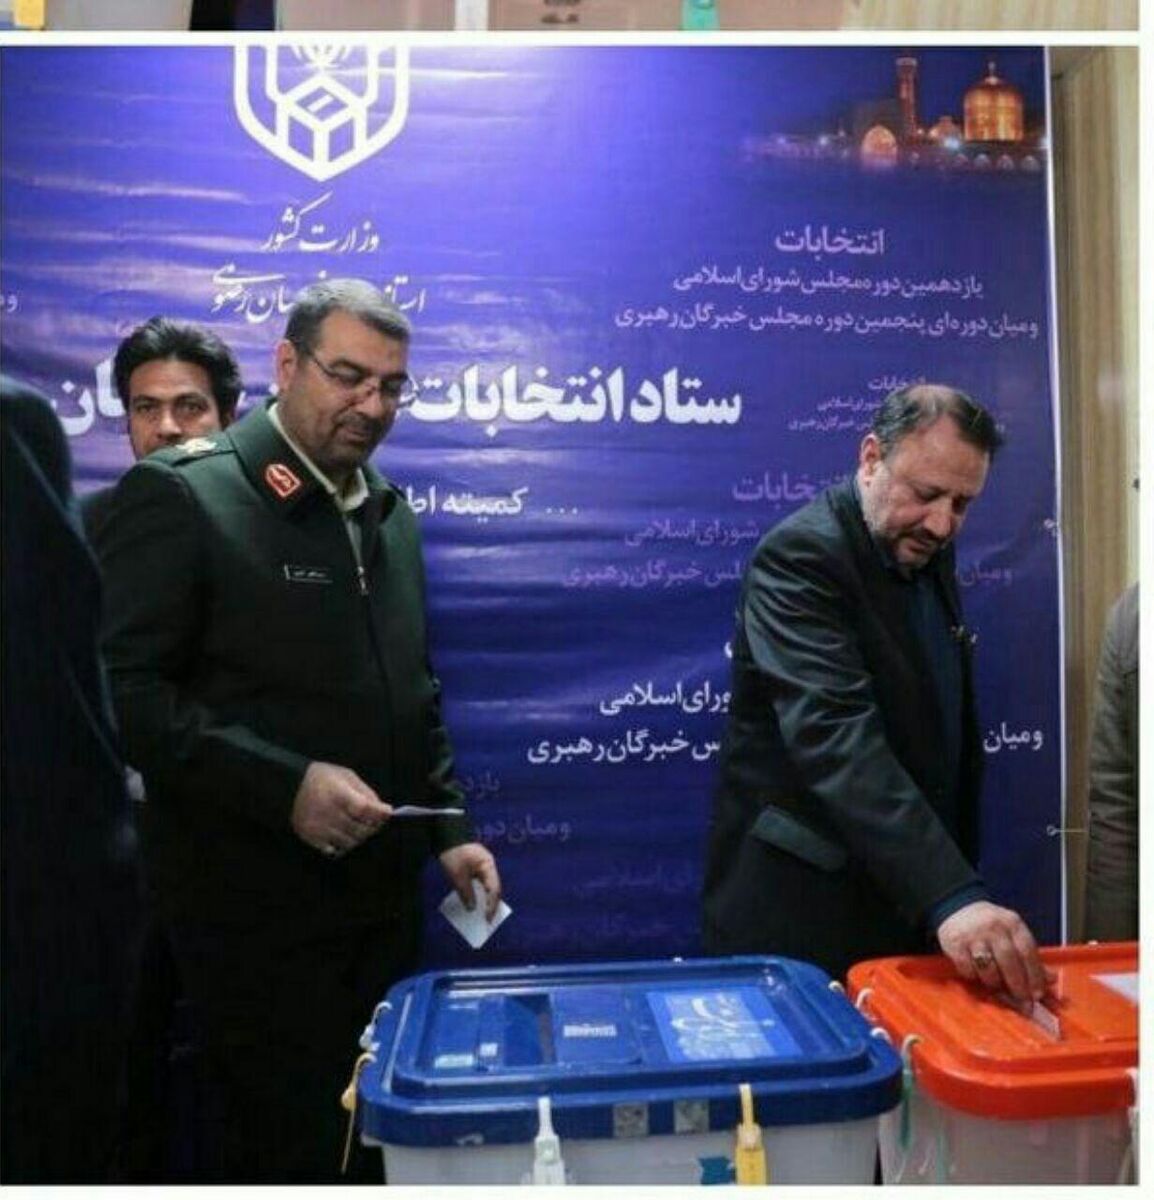 ۳۰ هزار نفر تامین امنیت انتخابات در خراسان رضوی را برعهده دارند